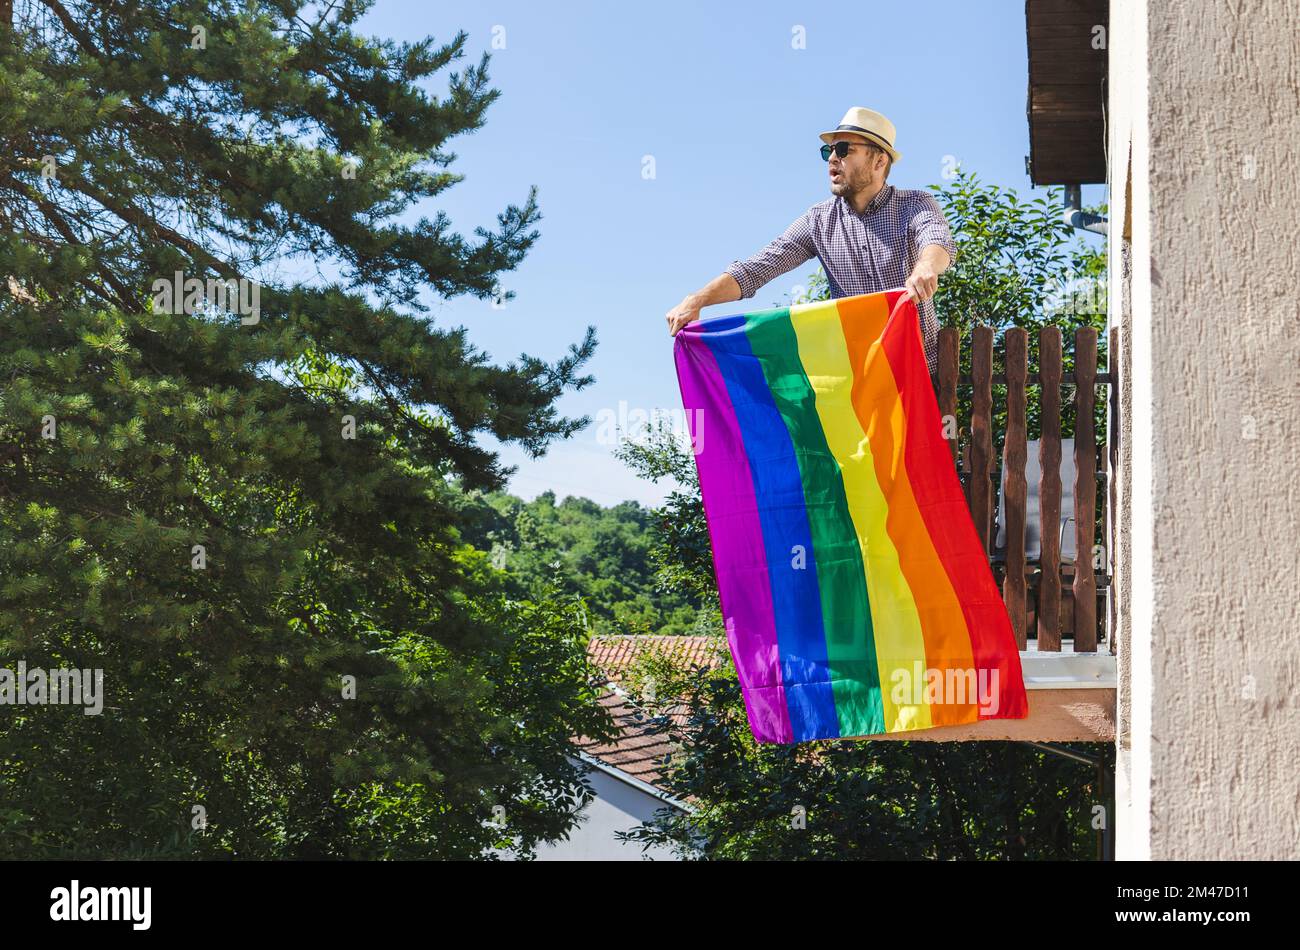 Heterosexueller Mann mit Hut, der auf dem Balkon steht und eine Regenbogenflagge hält und dabei die LGBT-Gemeinschaft, Menschenrechte, Gleichheit und Vielfalt unterstützt Stockfoto